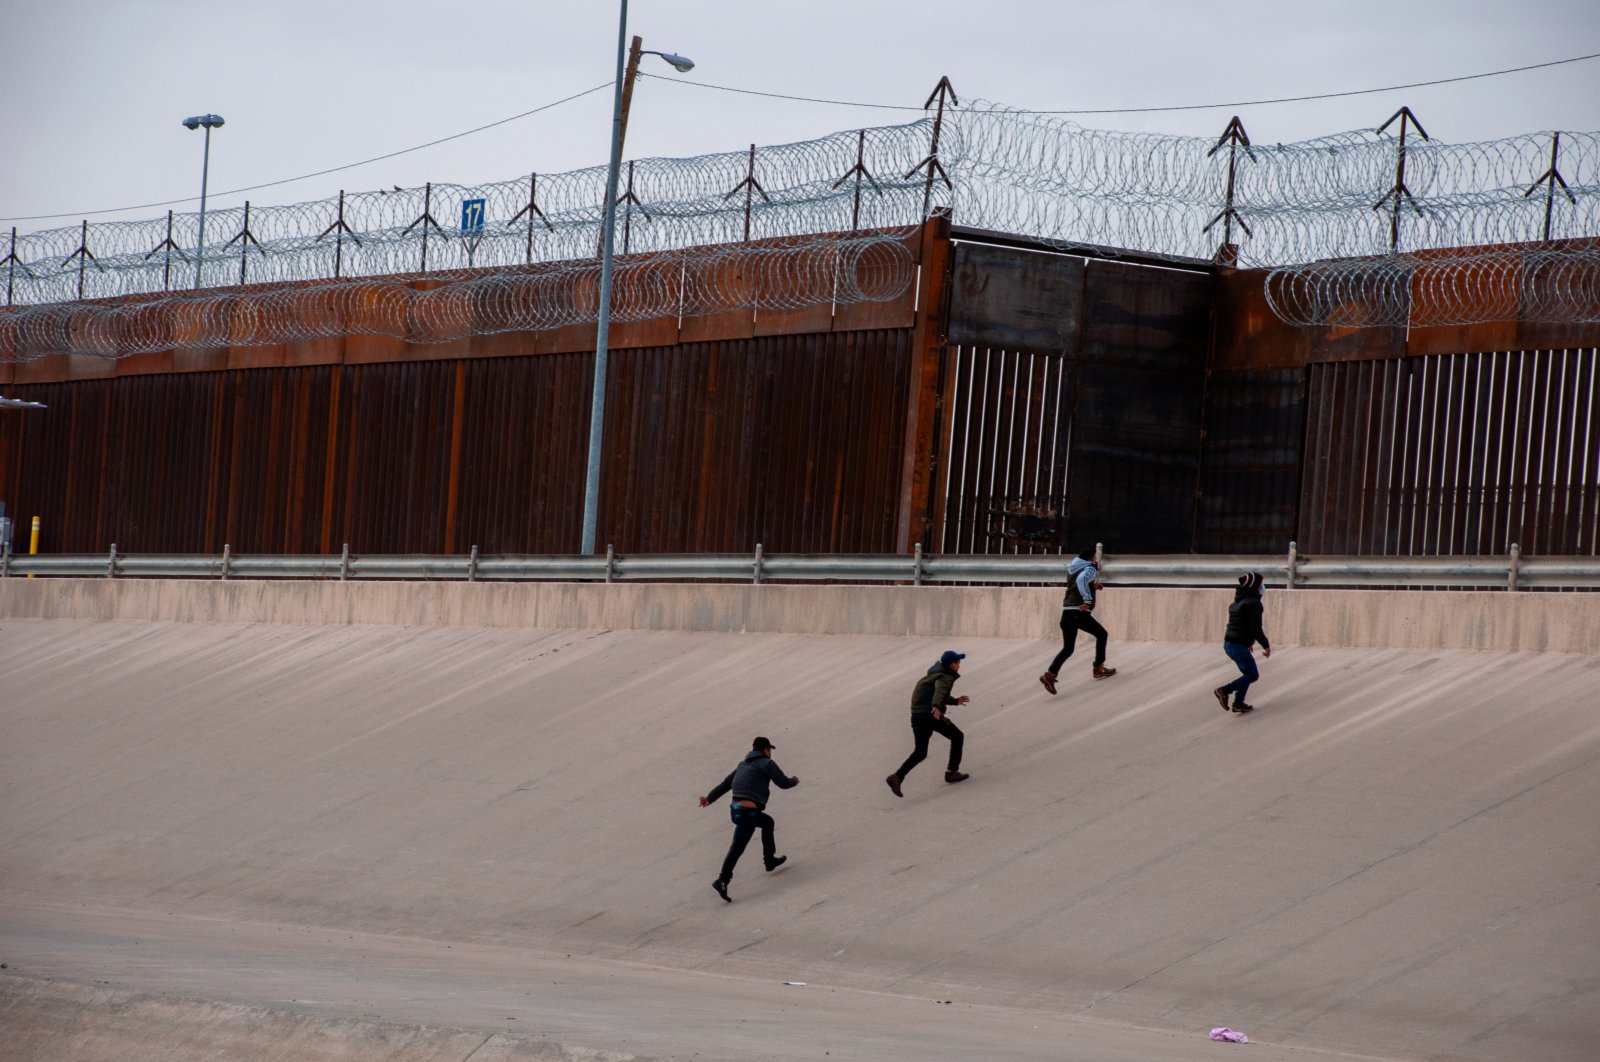 這是3月9日在墨西哥邊境城市華雷斯一側拍攝的中美洲國家移民穿過布拉沃河從墨西哥試圖進入美國的資料照片。